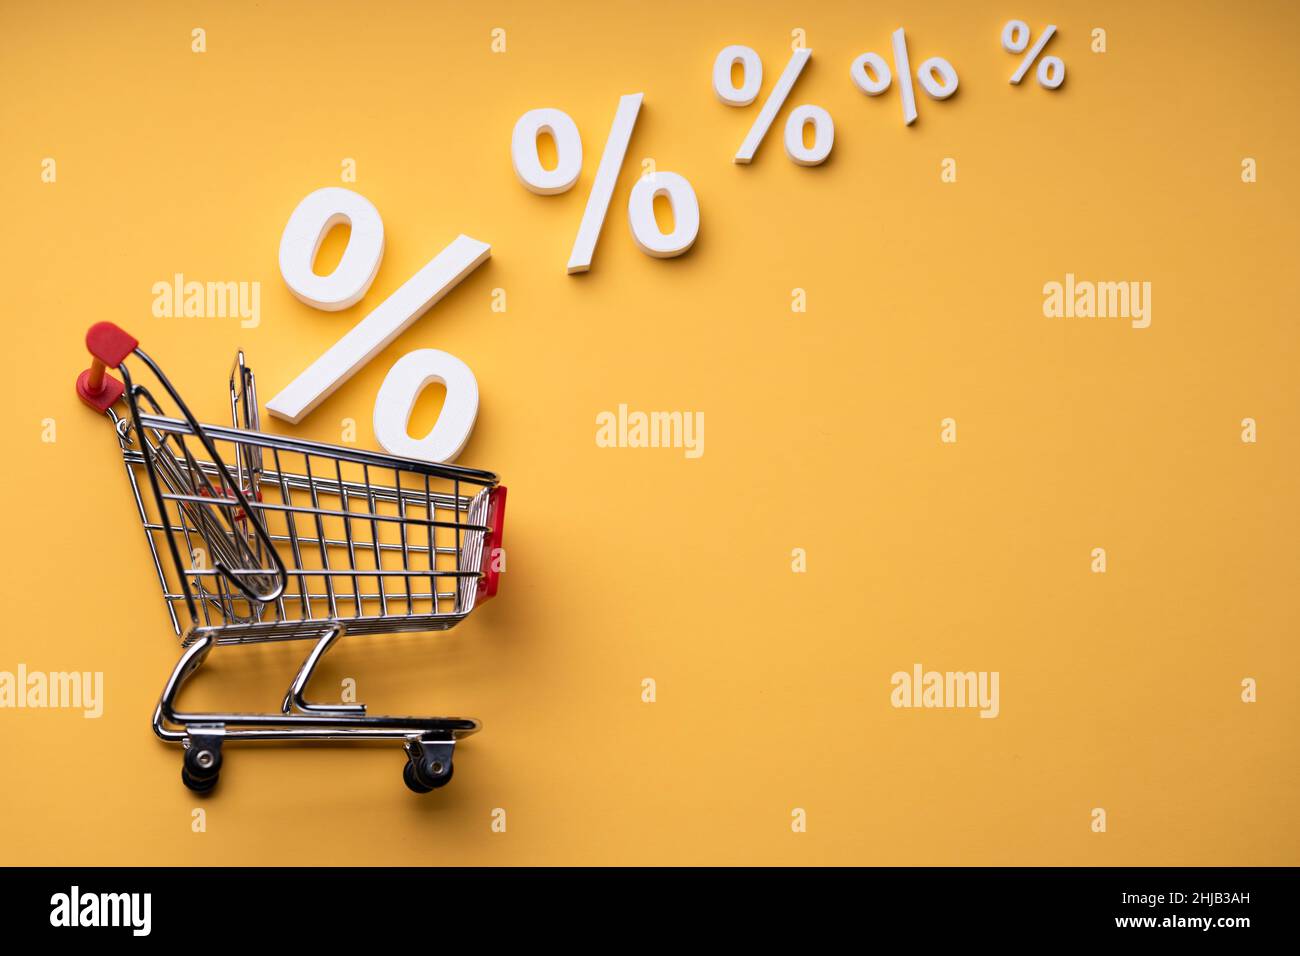 Verkaufsprozentsätze, Die Auf Gelbem Hintergrund In Den Warenkorb Fallen Stockfoto